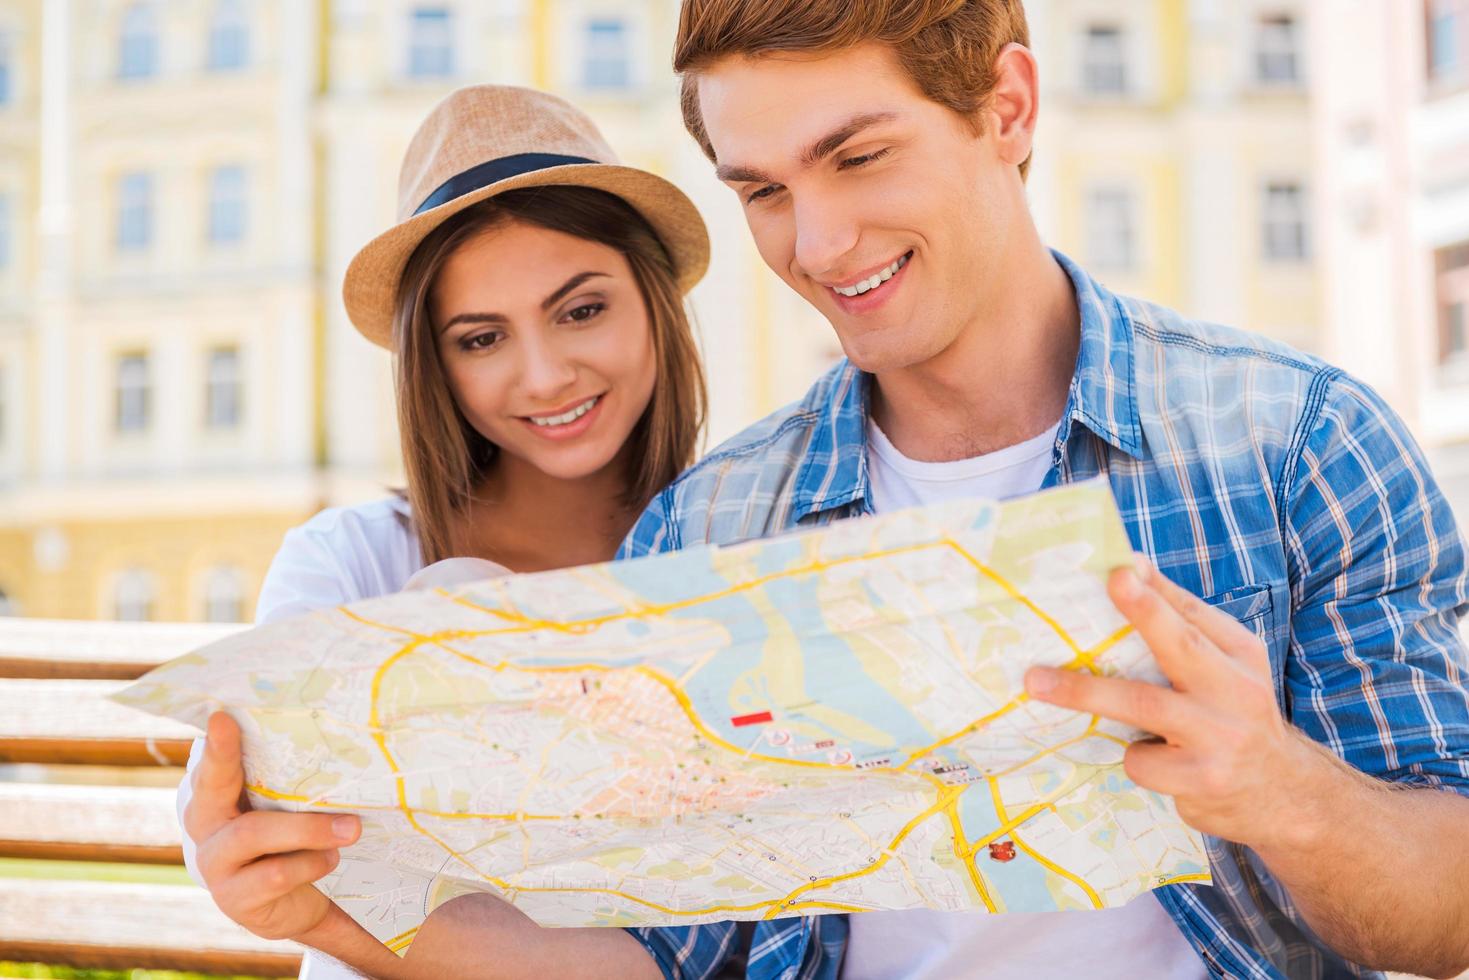 escolhendo um bom lugar para visitar. feliz casal jovem turista sentado no banco juntos e examinando o mapa foto